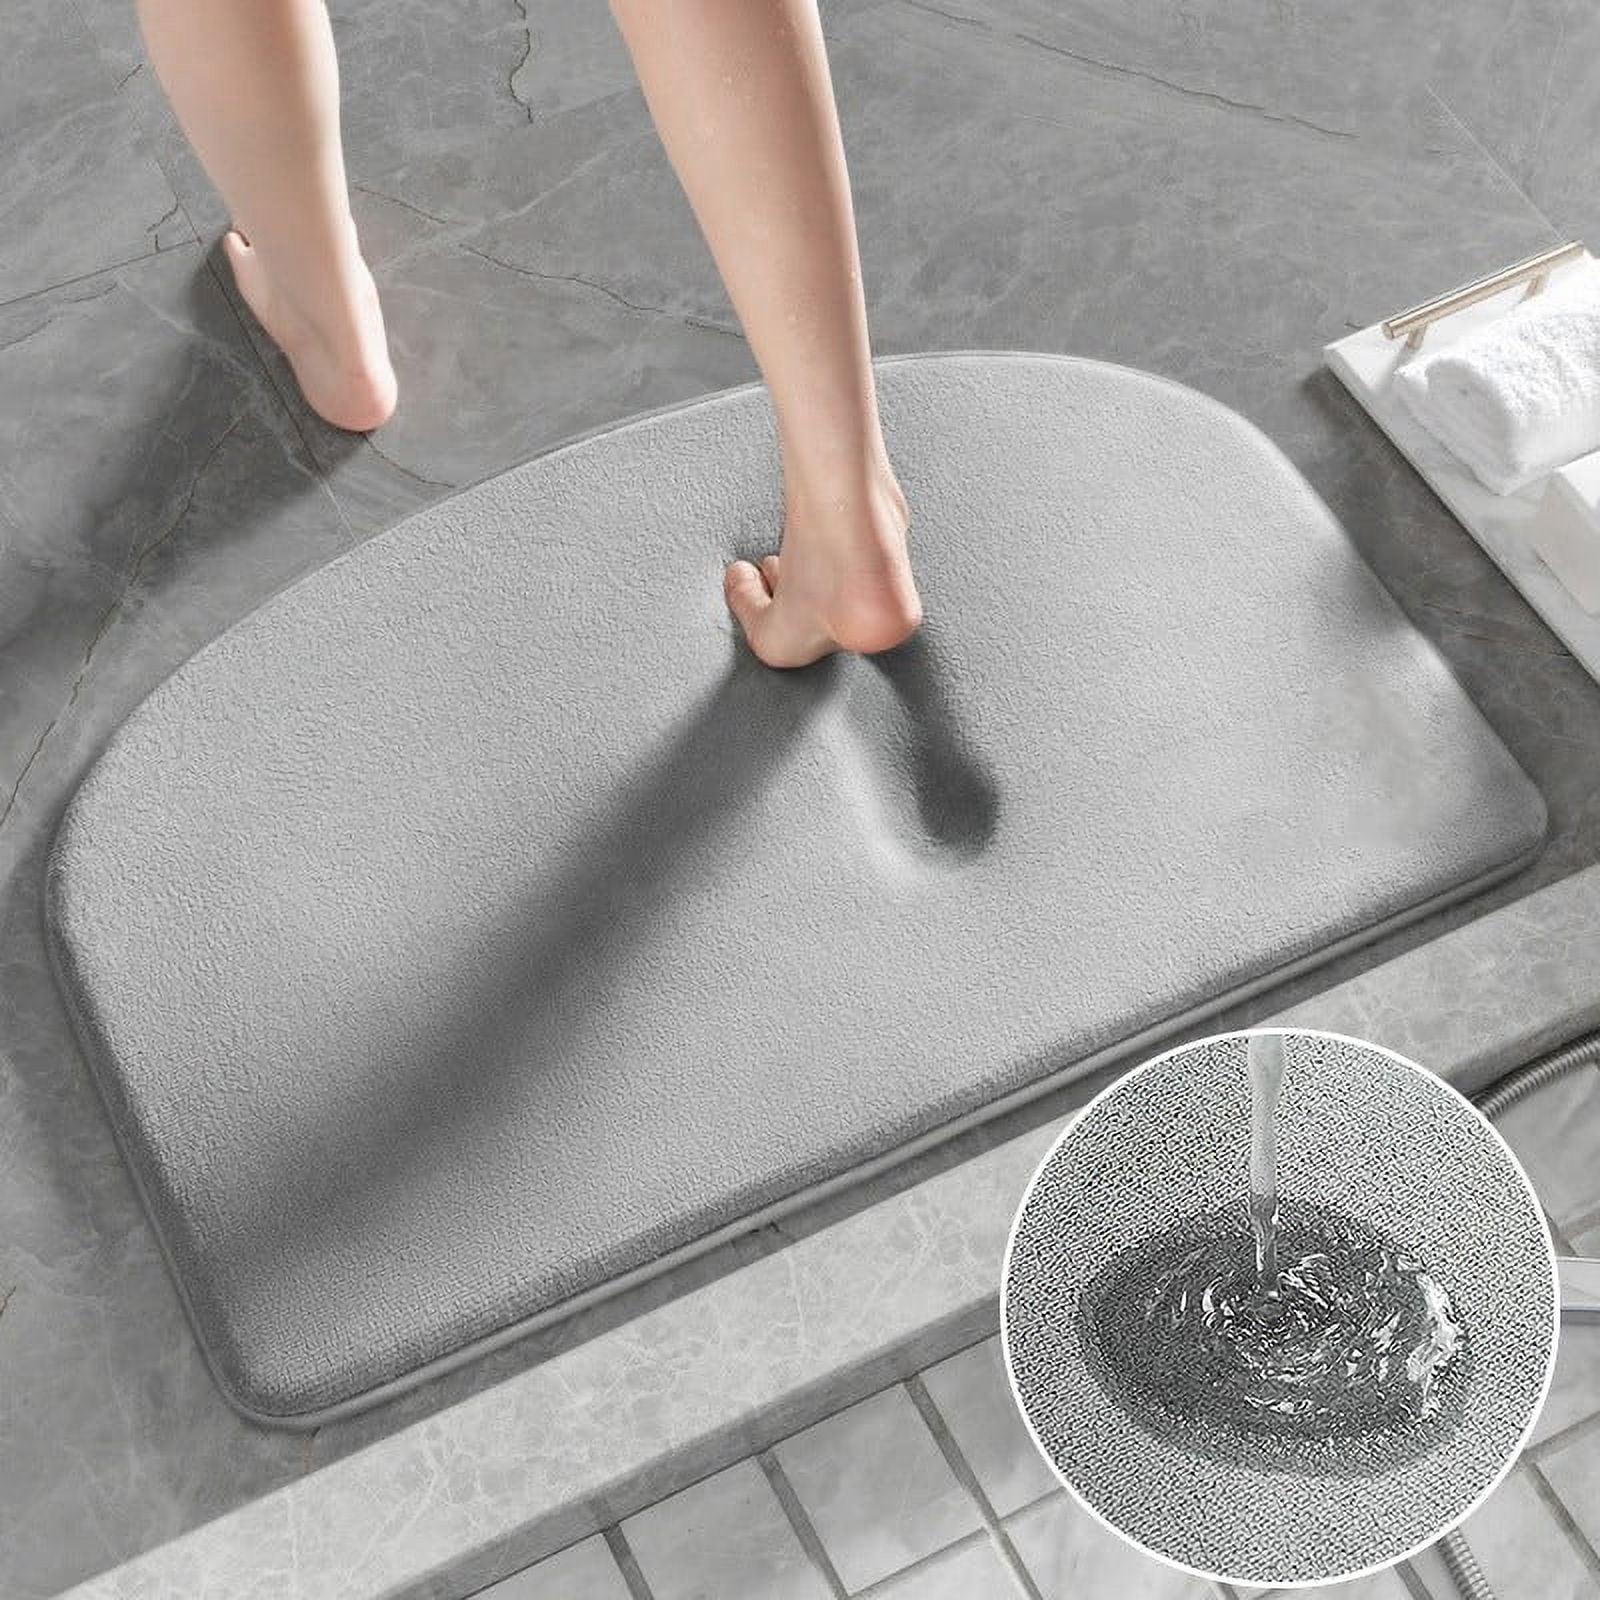 19.68x31.49 Memory Foam Bath Mat Bathroom mat Absorbent Anti-slip Mat  Floor Mats for Bath Room Shower 